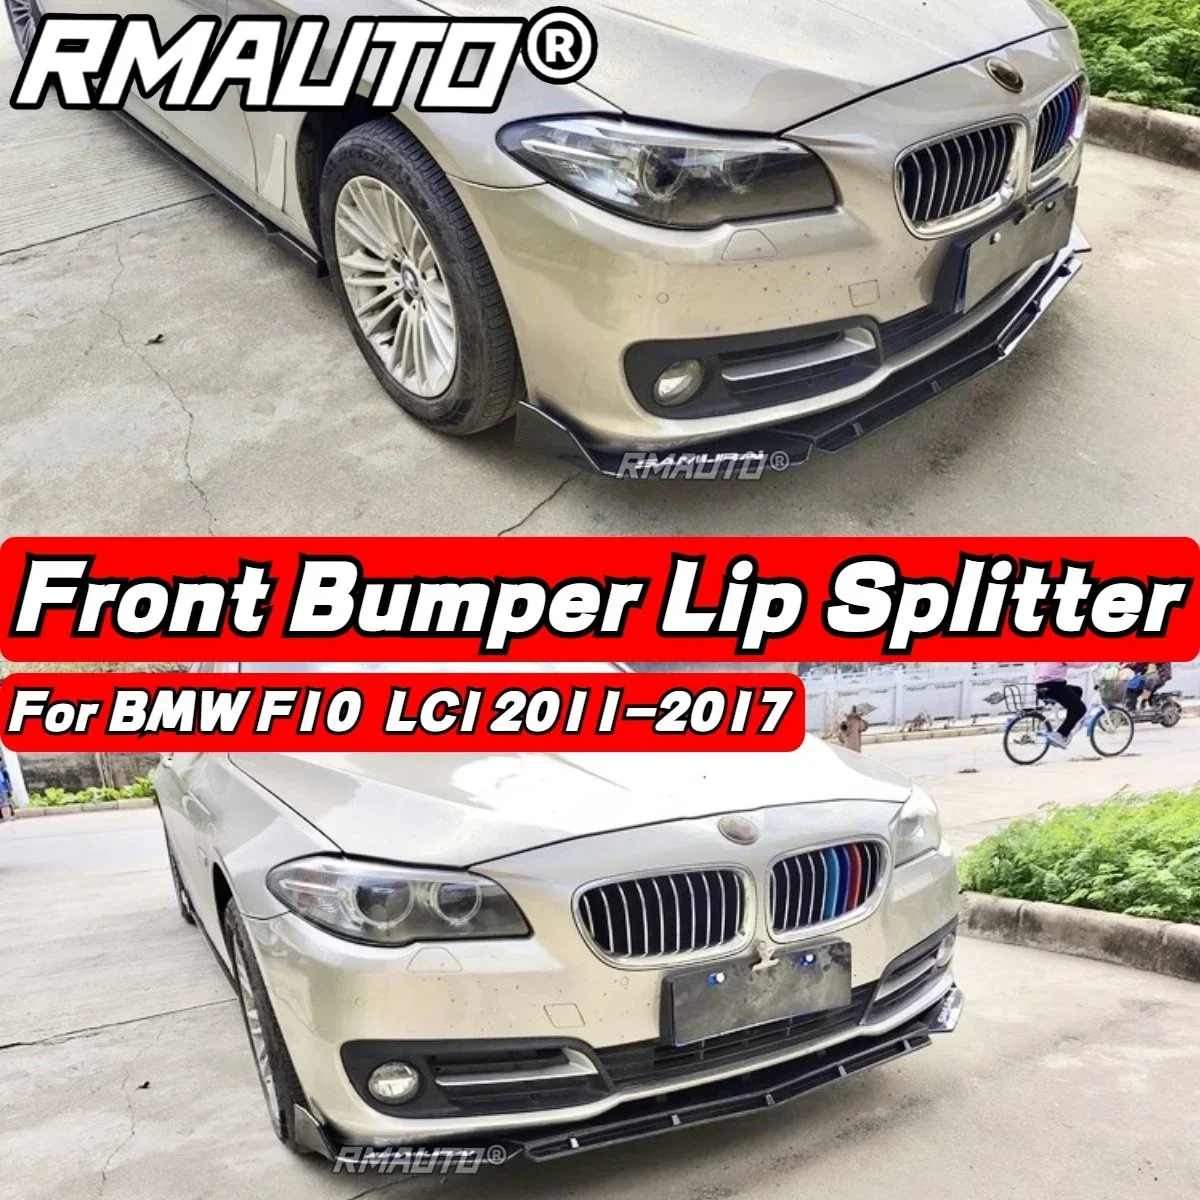 

Передний бампер F10, сплиттер для переднего бампера, спойлер, диффузор, Защита бампера для BMW F10 LCI 2011-2017, автомобильные аксессуары, комплект кузова